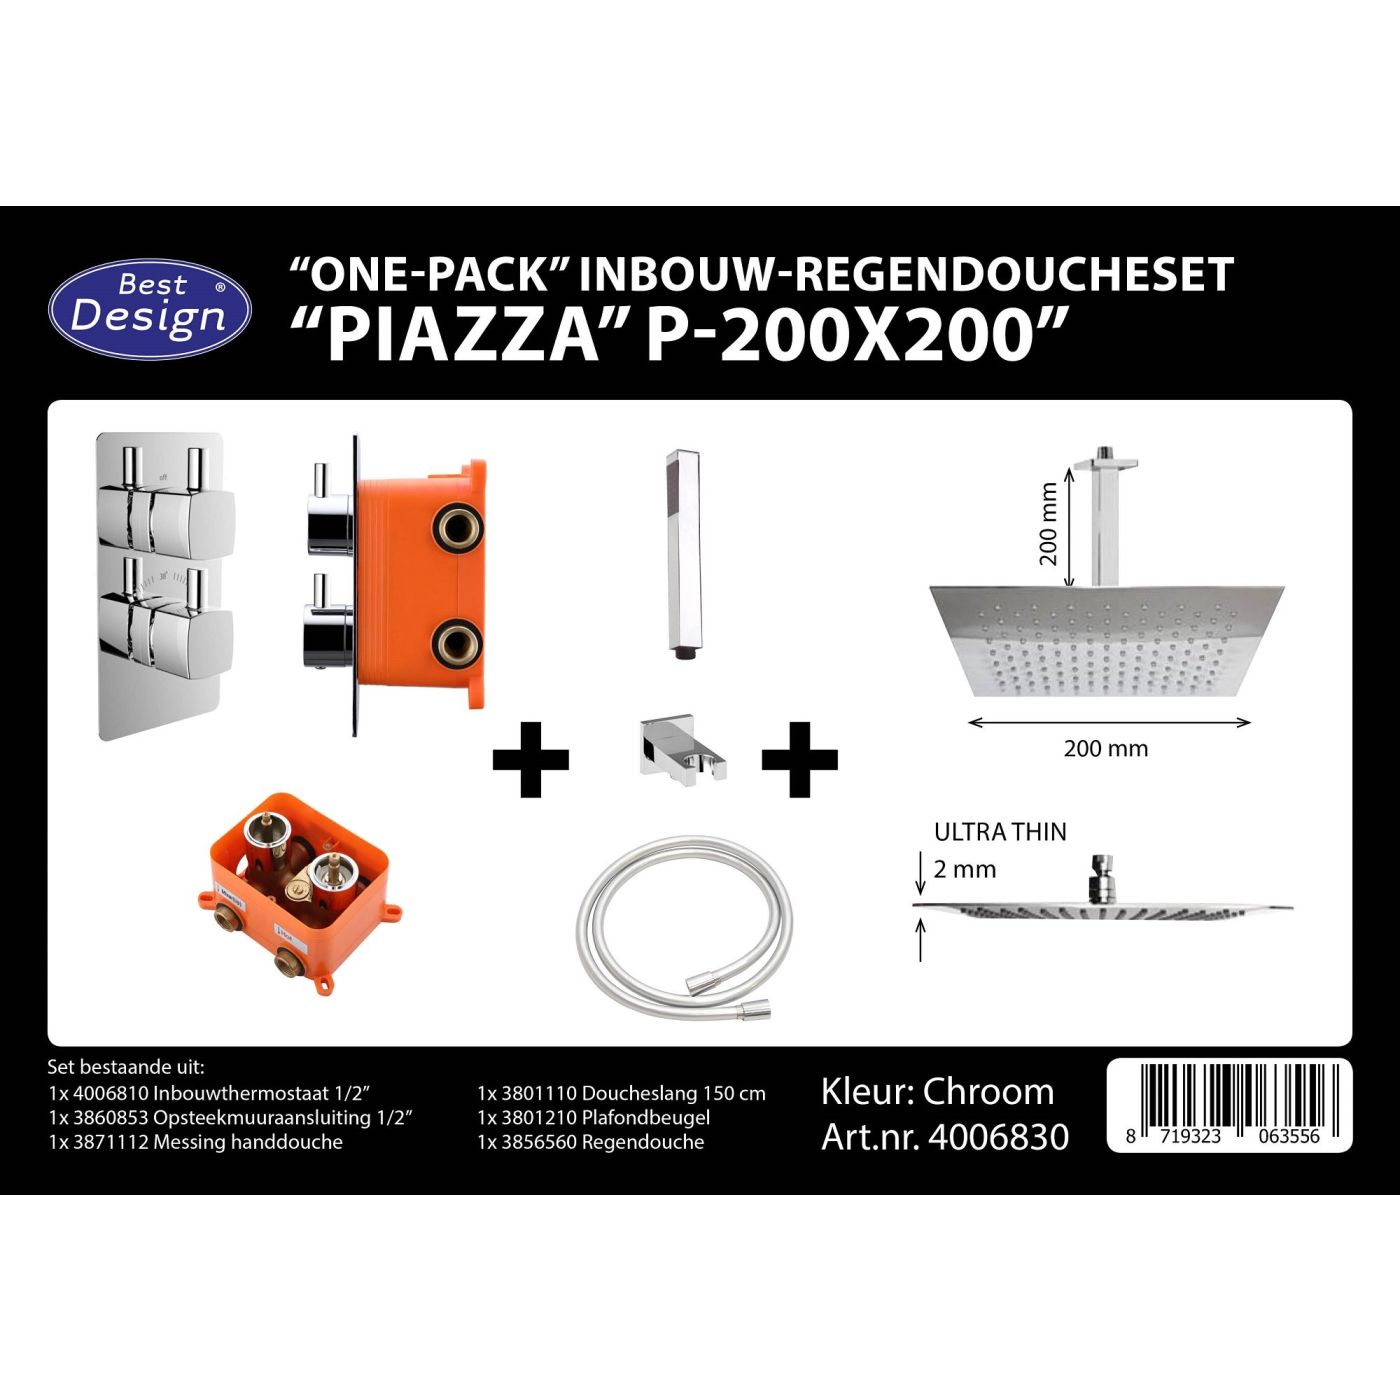 Best Design Piazza inbouw regendoucheset & inbouwbox P-200×200